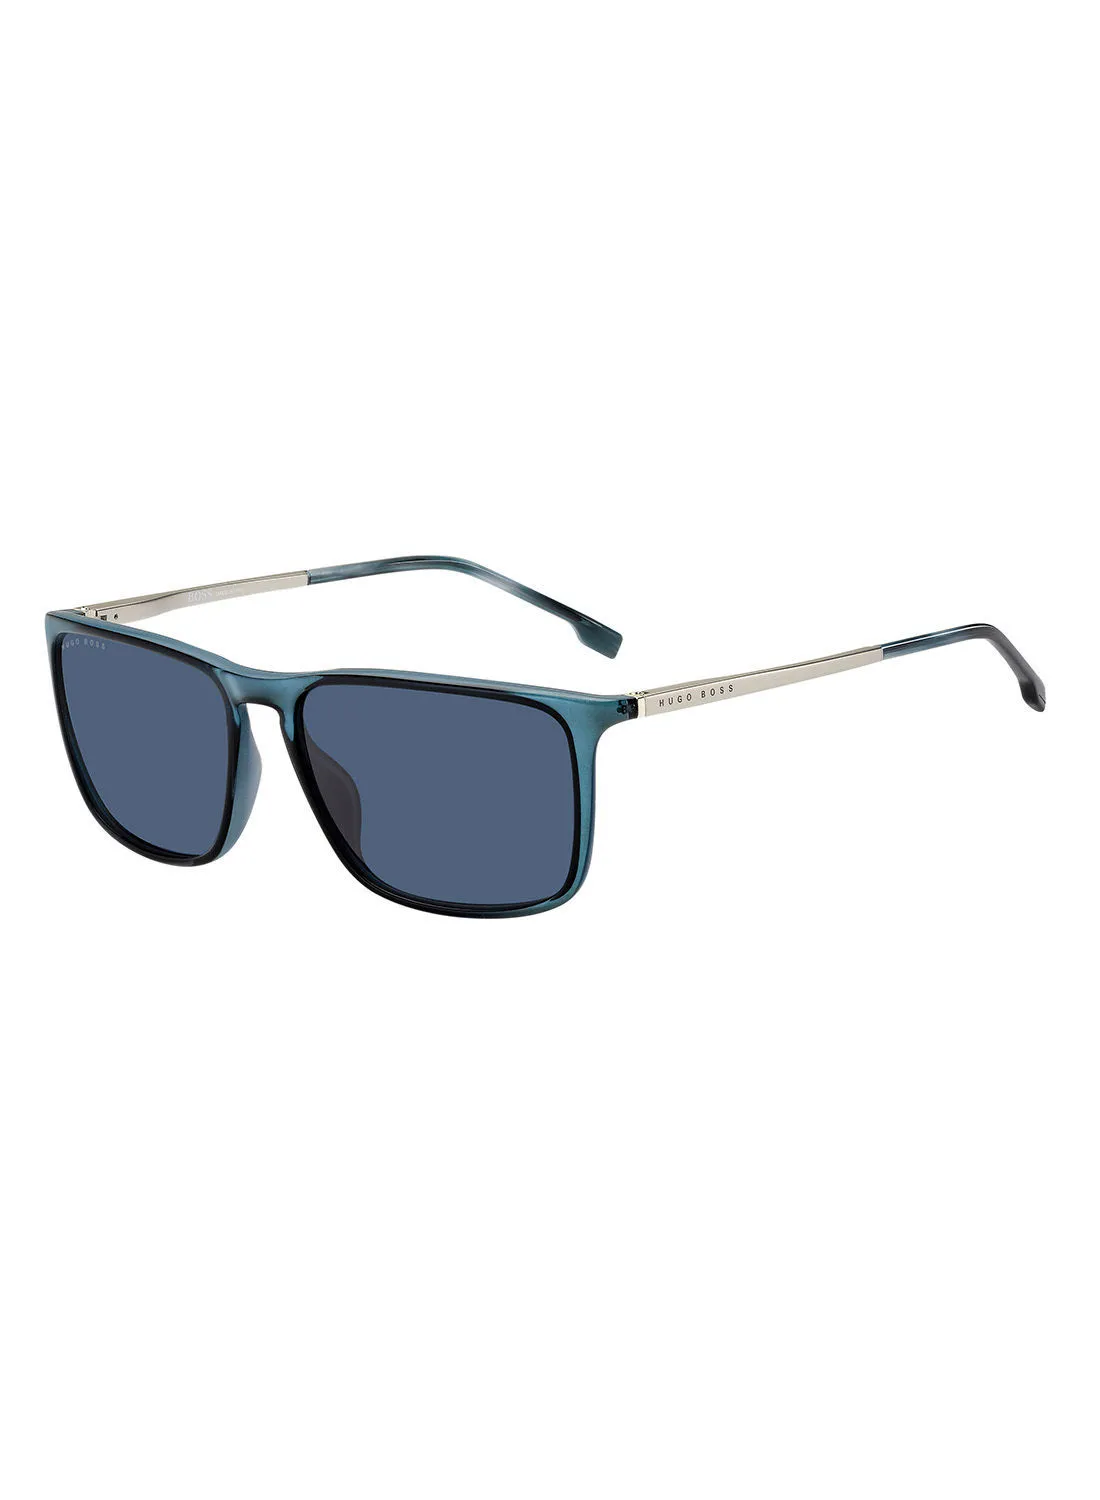 نظارة شمسية هيوغو بوس مستطيلة للحماية من الأشعة فوق البنفسجية BOSS 1182 / S / IT BLUE 57